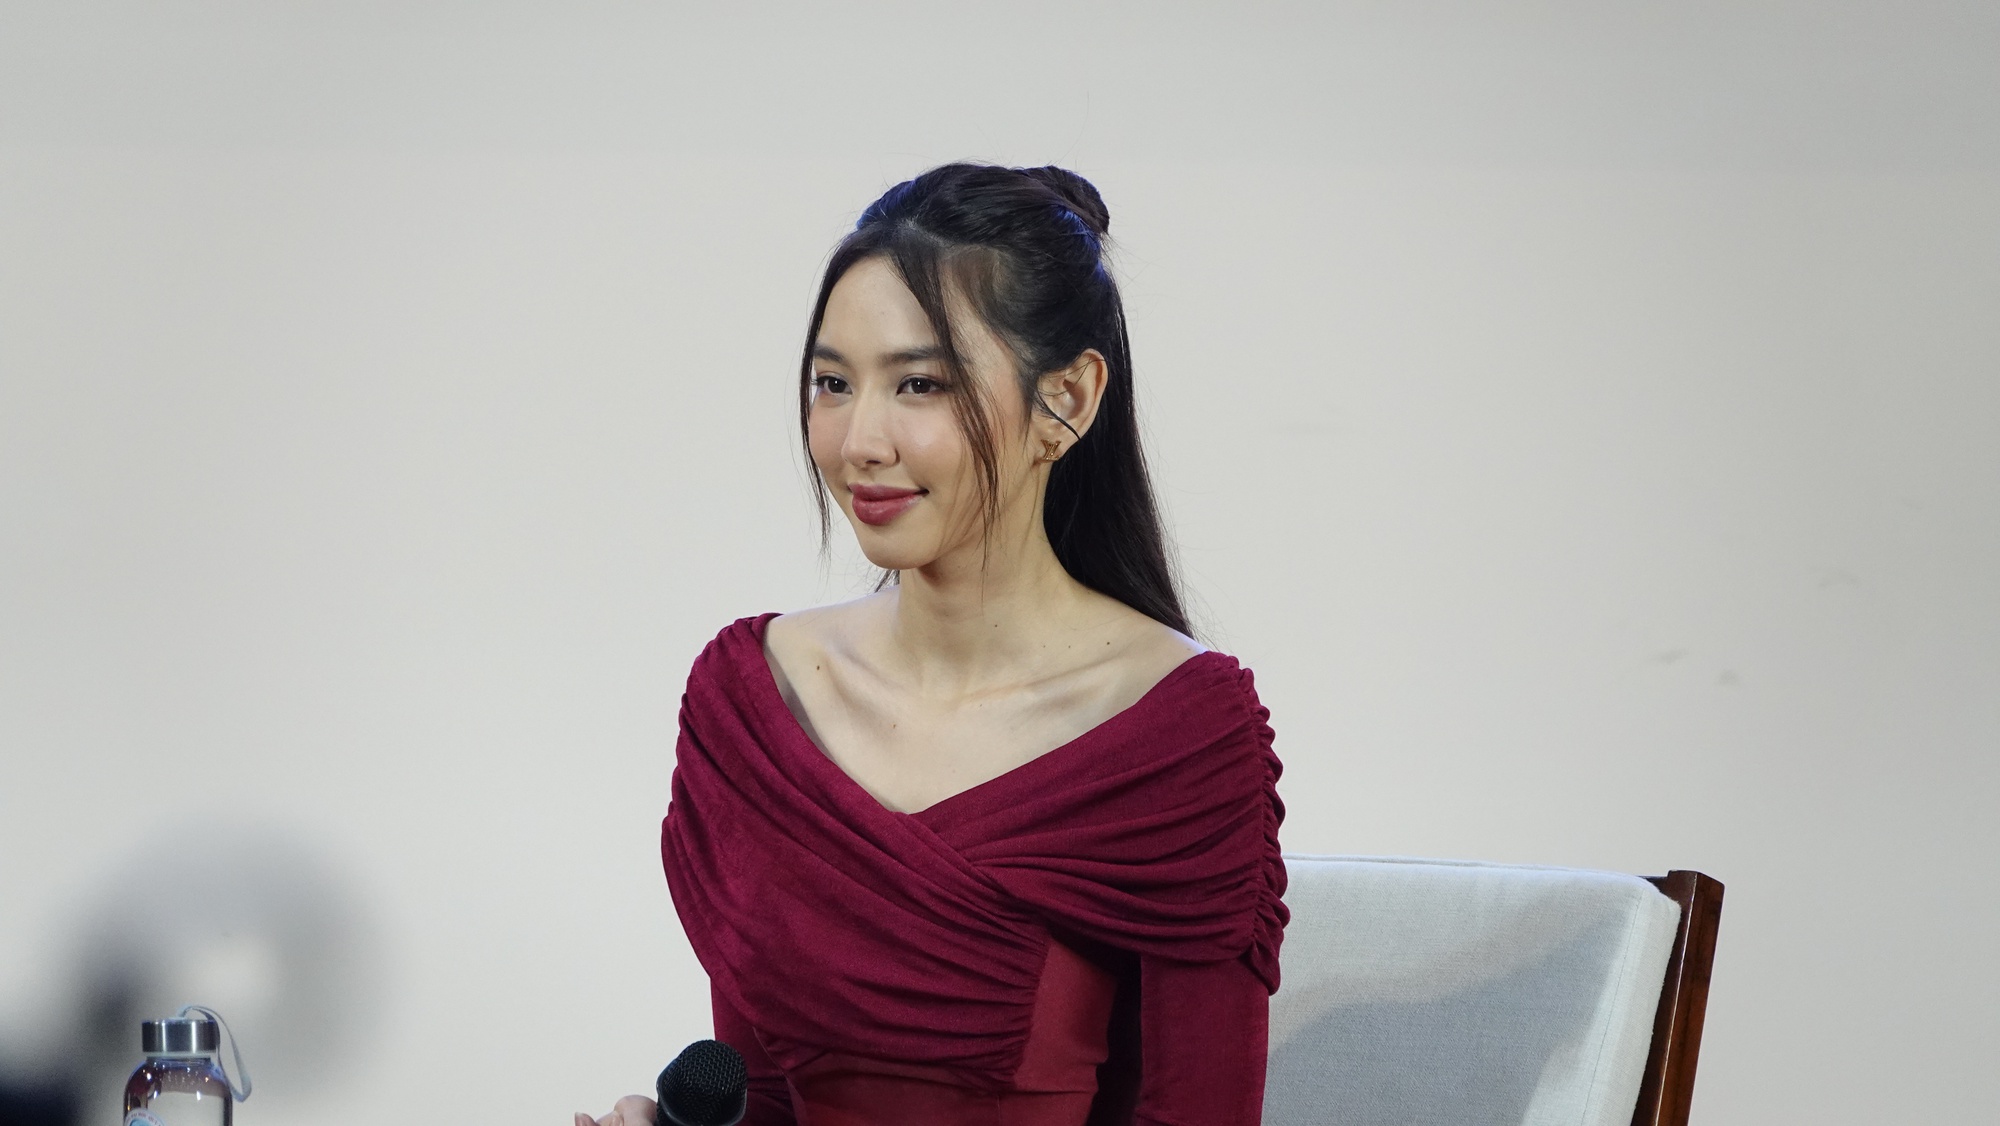 Hoa hậu Thủy Tiên chia sẻ kinh nghiệm học ngoại ngữ tại Đại học Quy Nhơn - Ảnh 5.